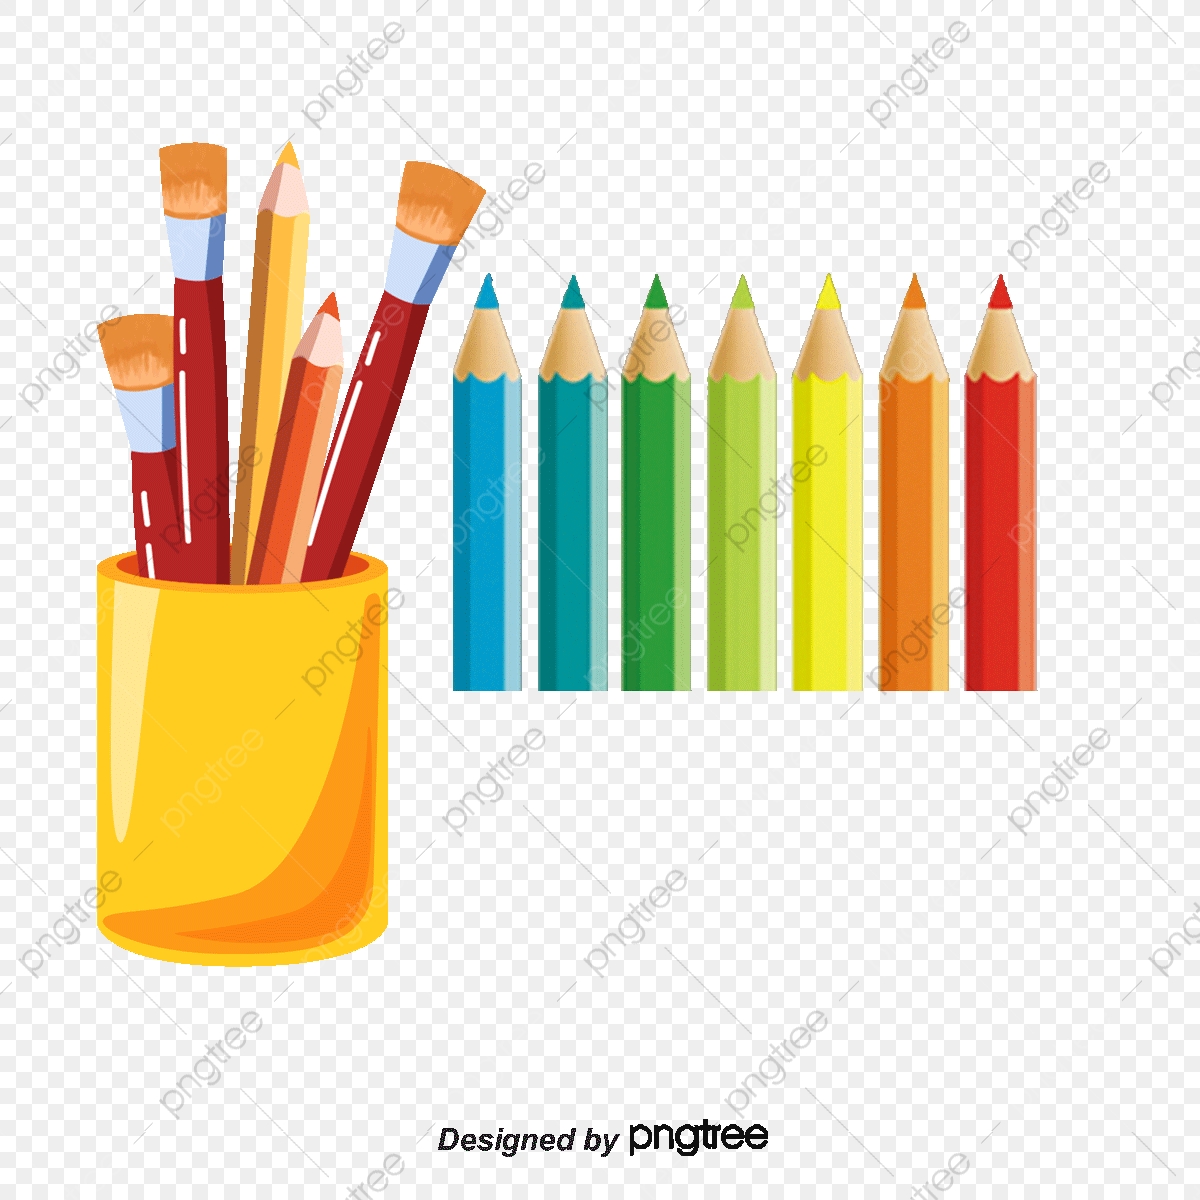 Clipart pen colour pen. Cartoon color colored pencils